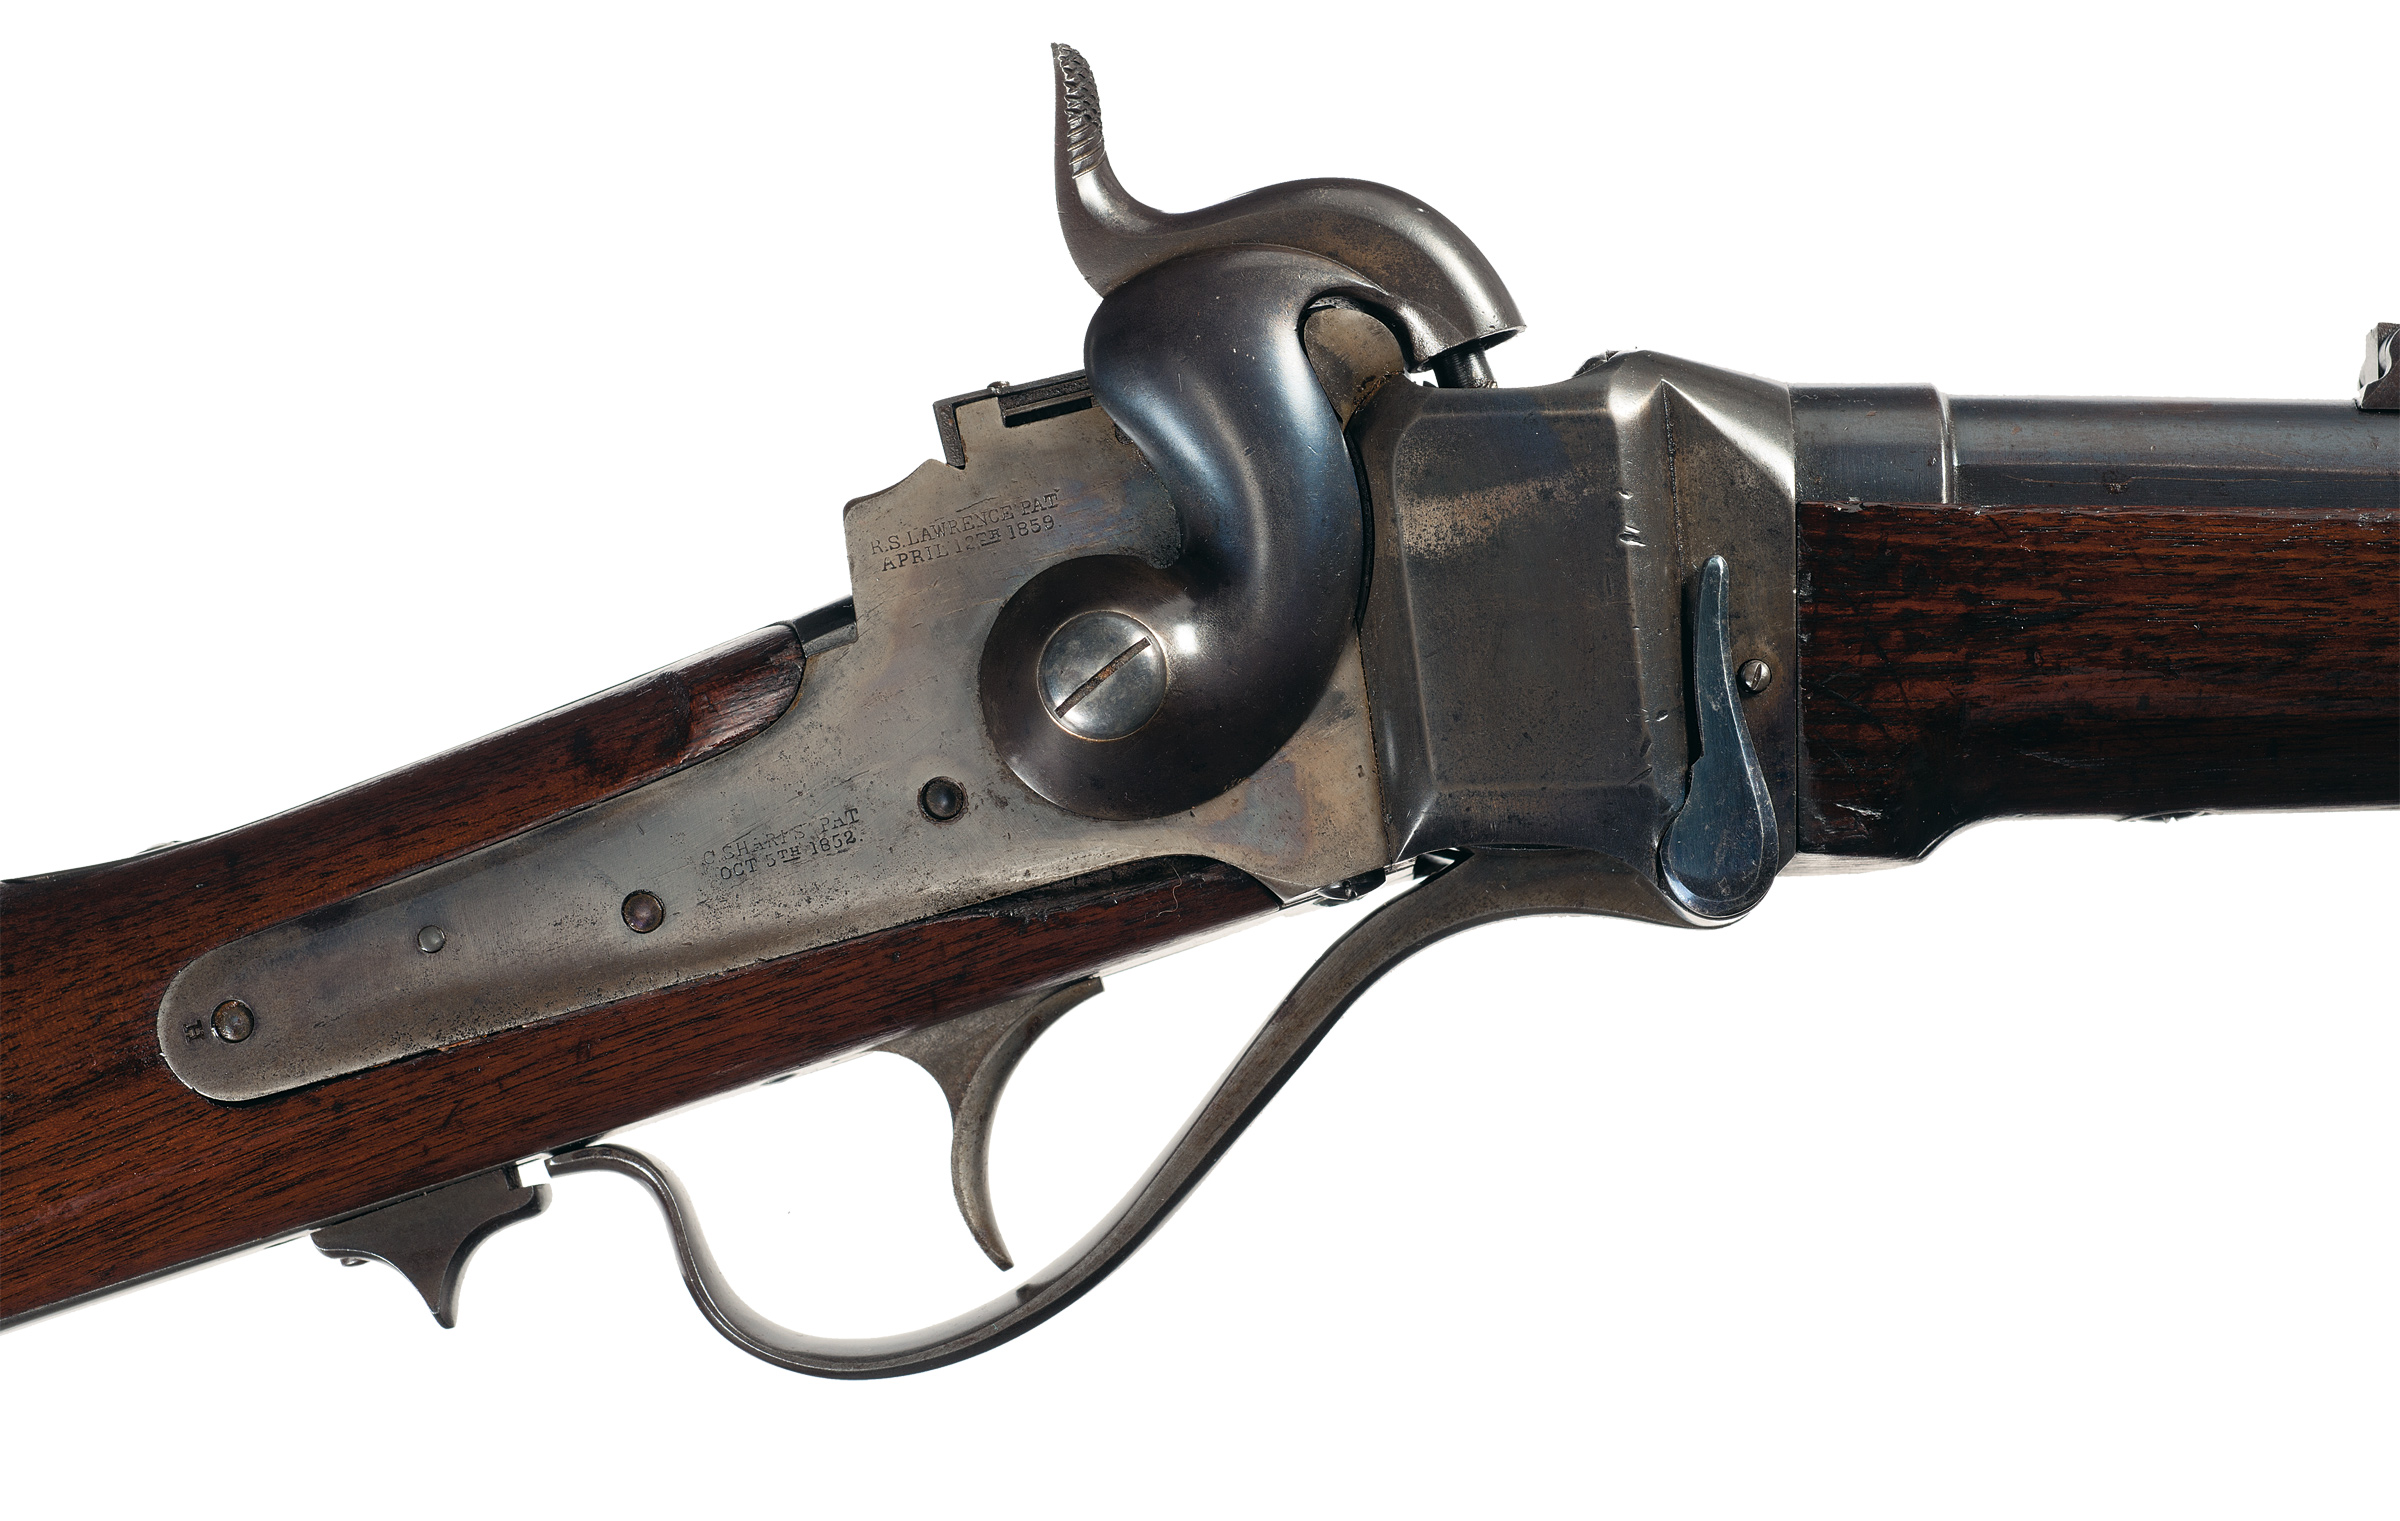 Скачать обои бесплатно Оружие, Винтовка Sharps 1859 картинка на рабочий стол ПК